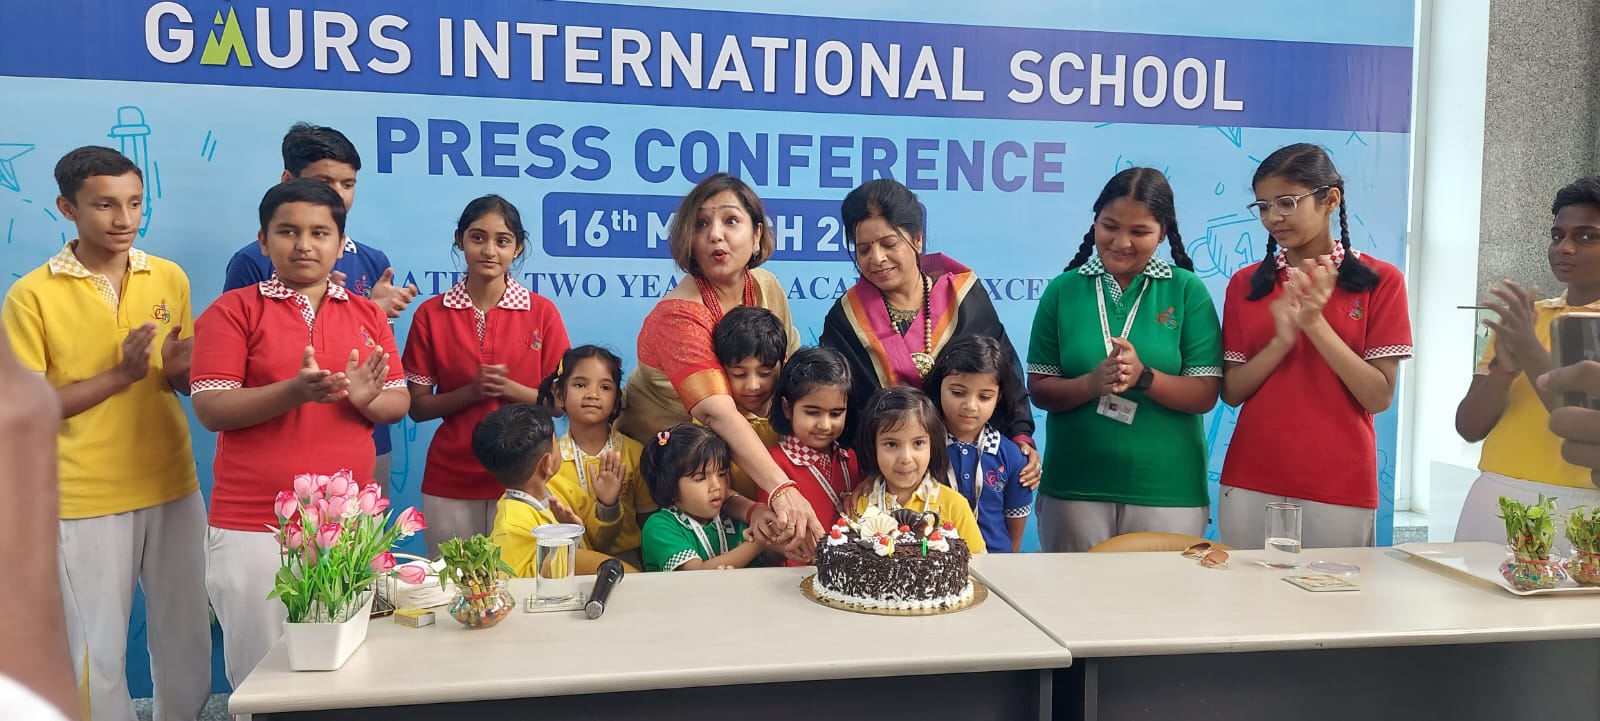 Greater Noida News : गौर इंटरनेशनल स्कूल में आयोजित की गई प्रेस कॉन्फ्रेंस